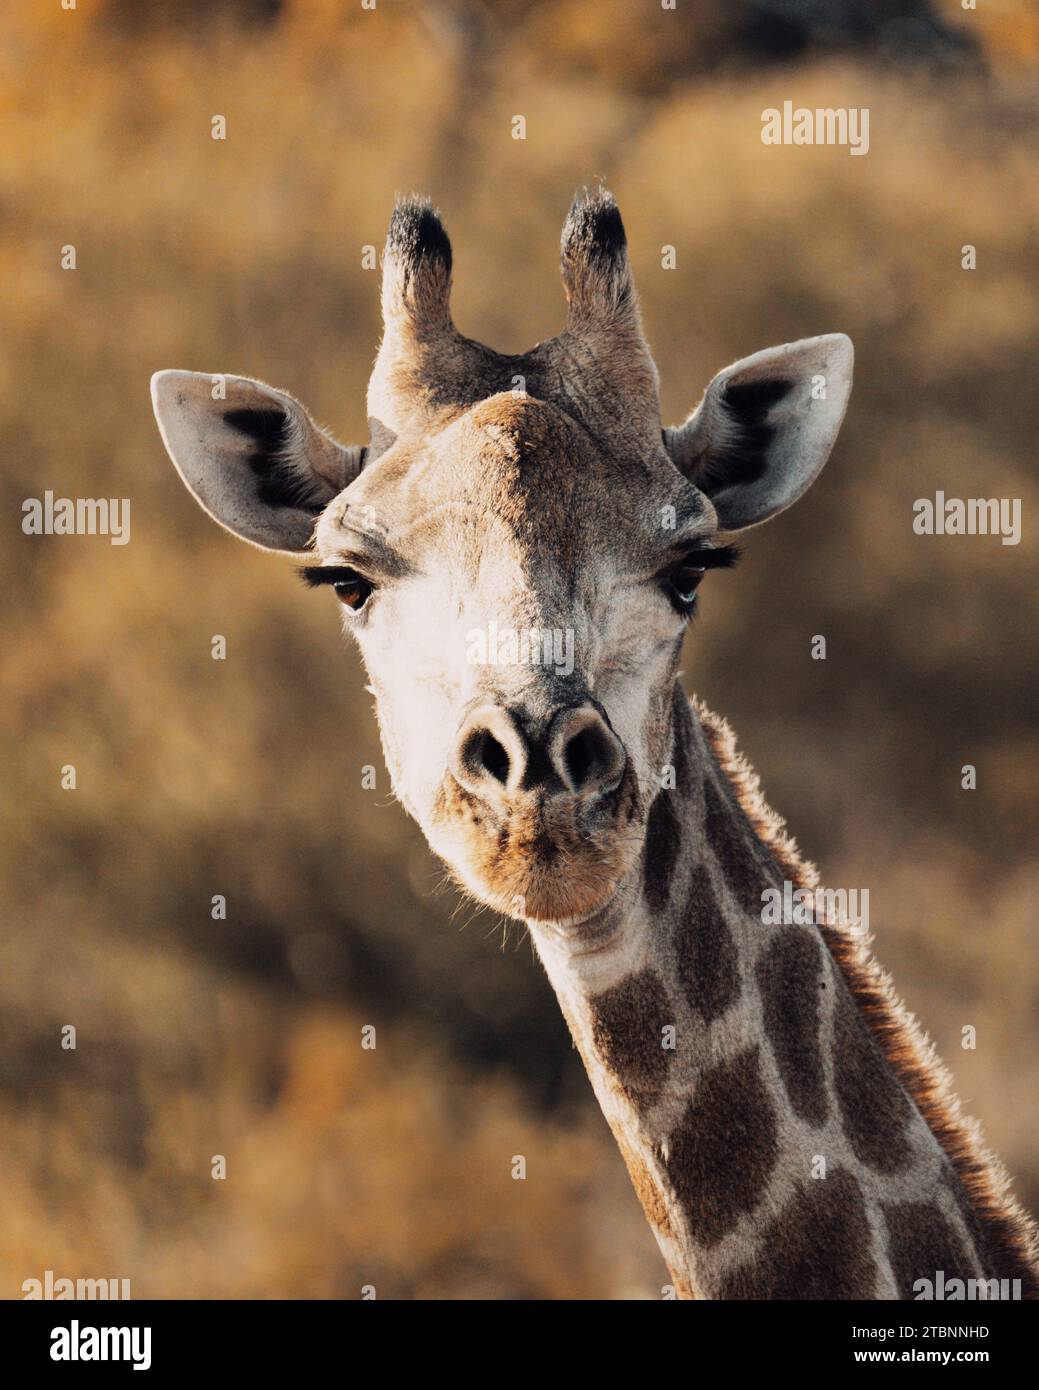 Nahaufnahme des Gesichts einer Giraffe, aufgenommen in exquisiten Details, während es direkt in die Kamera blickt. Stockfoto